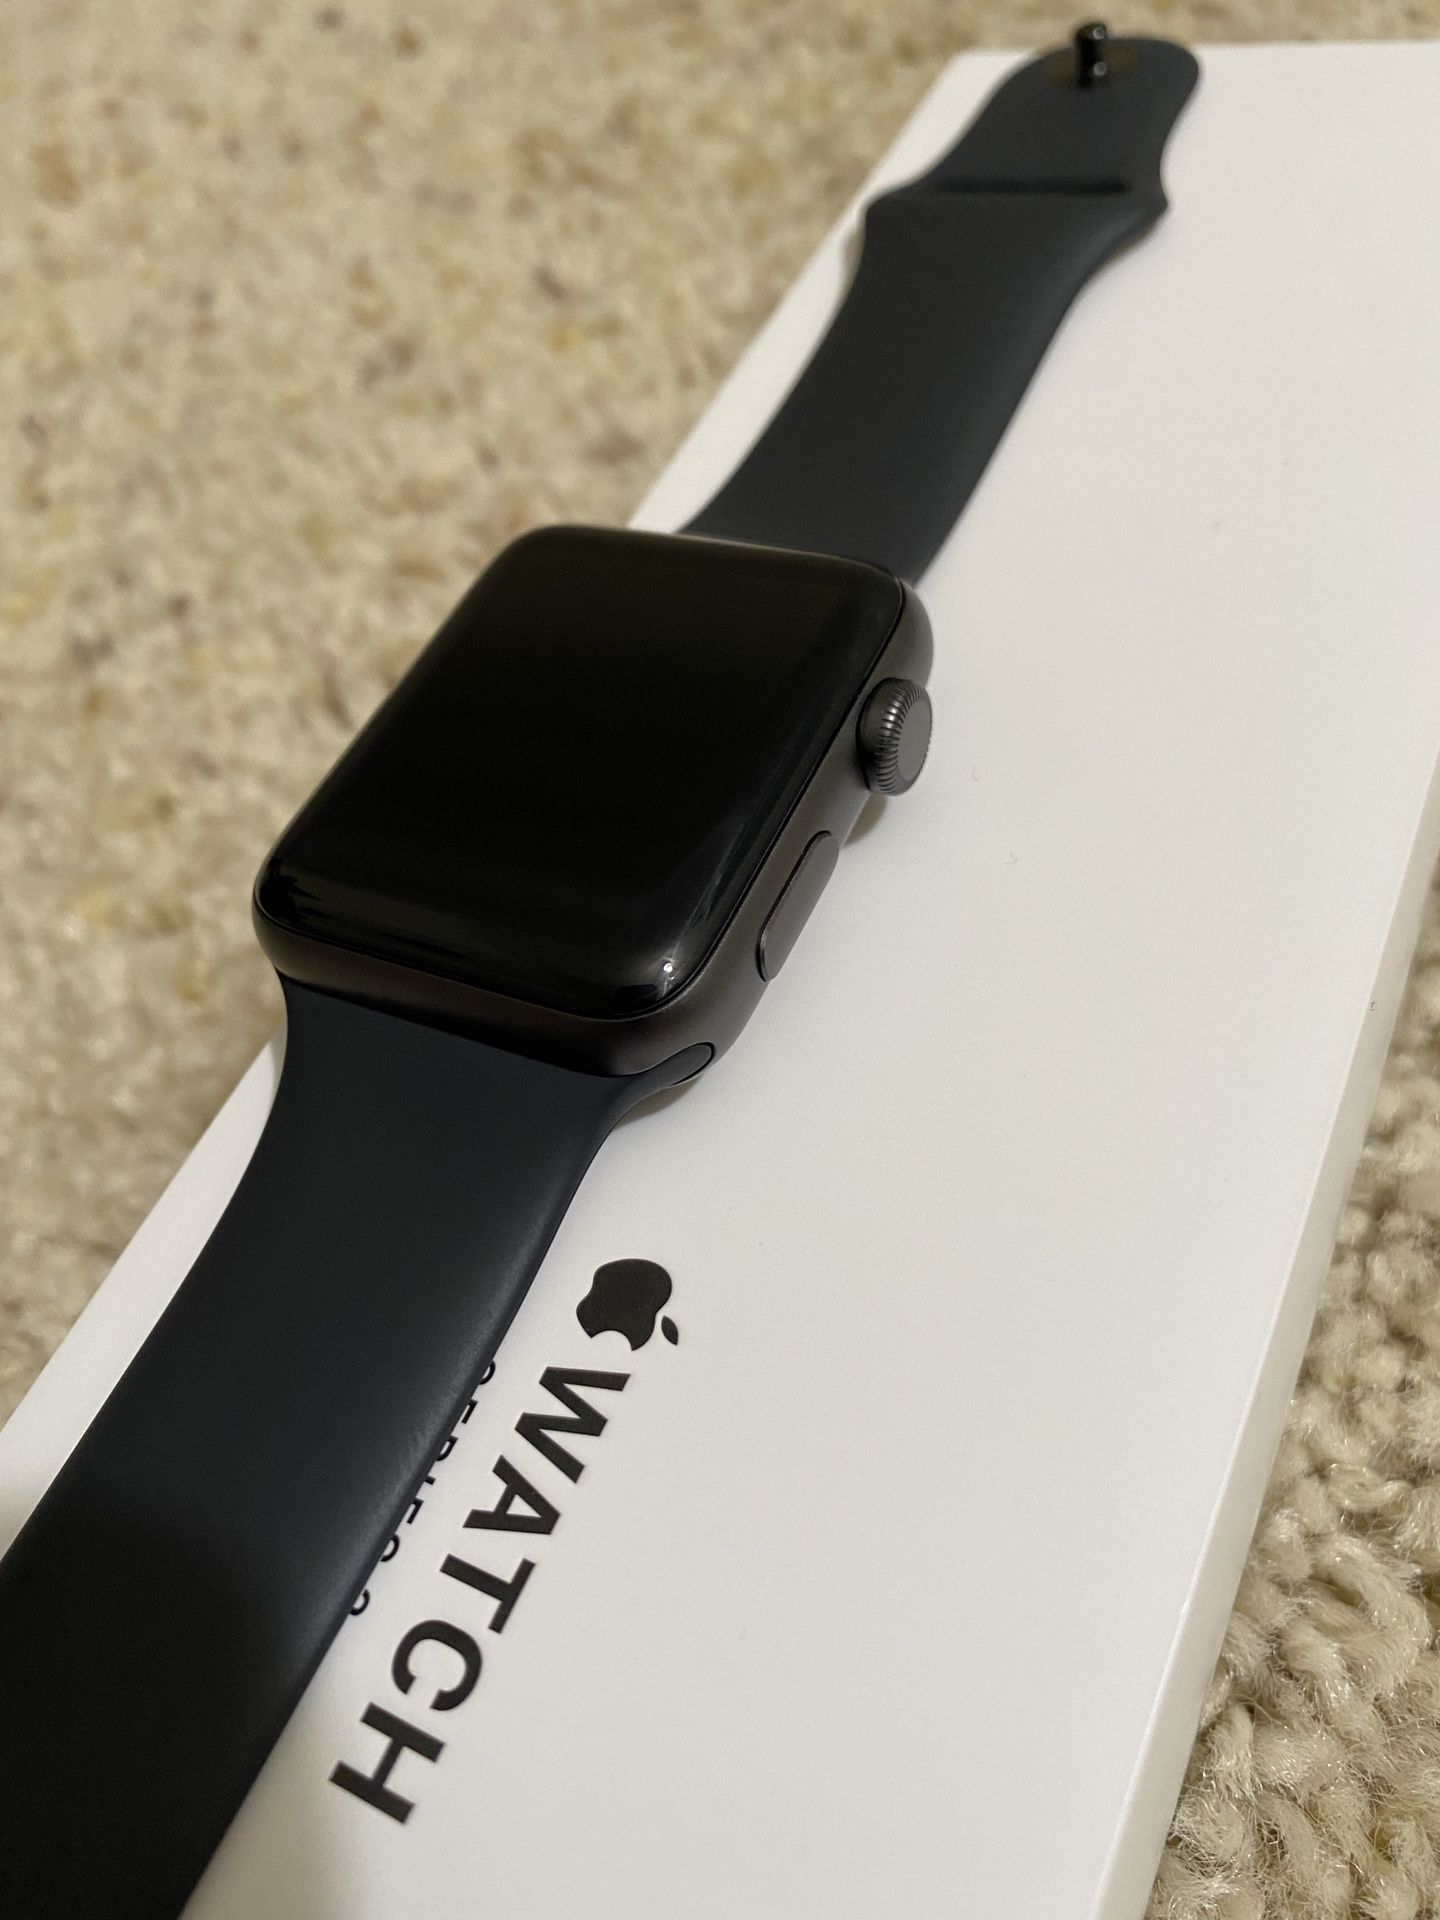 Apple Watch 3: 42mm (Apple Warranty also)